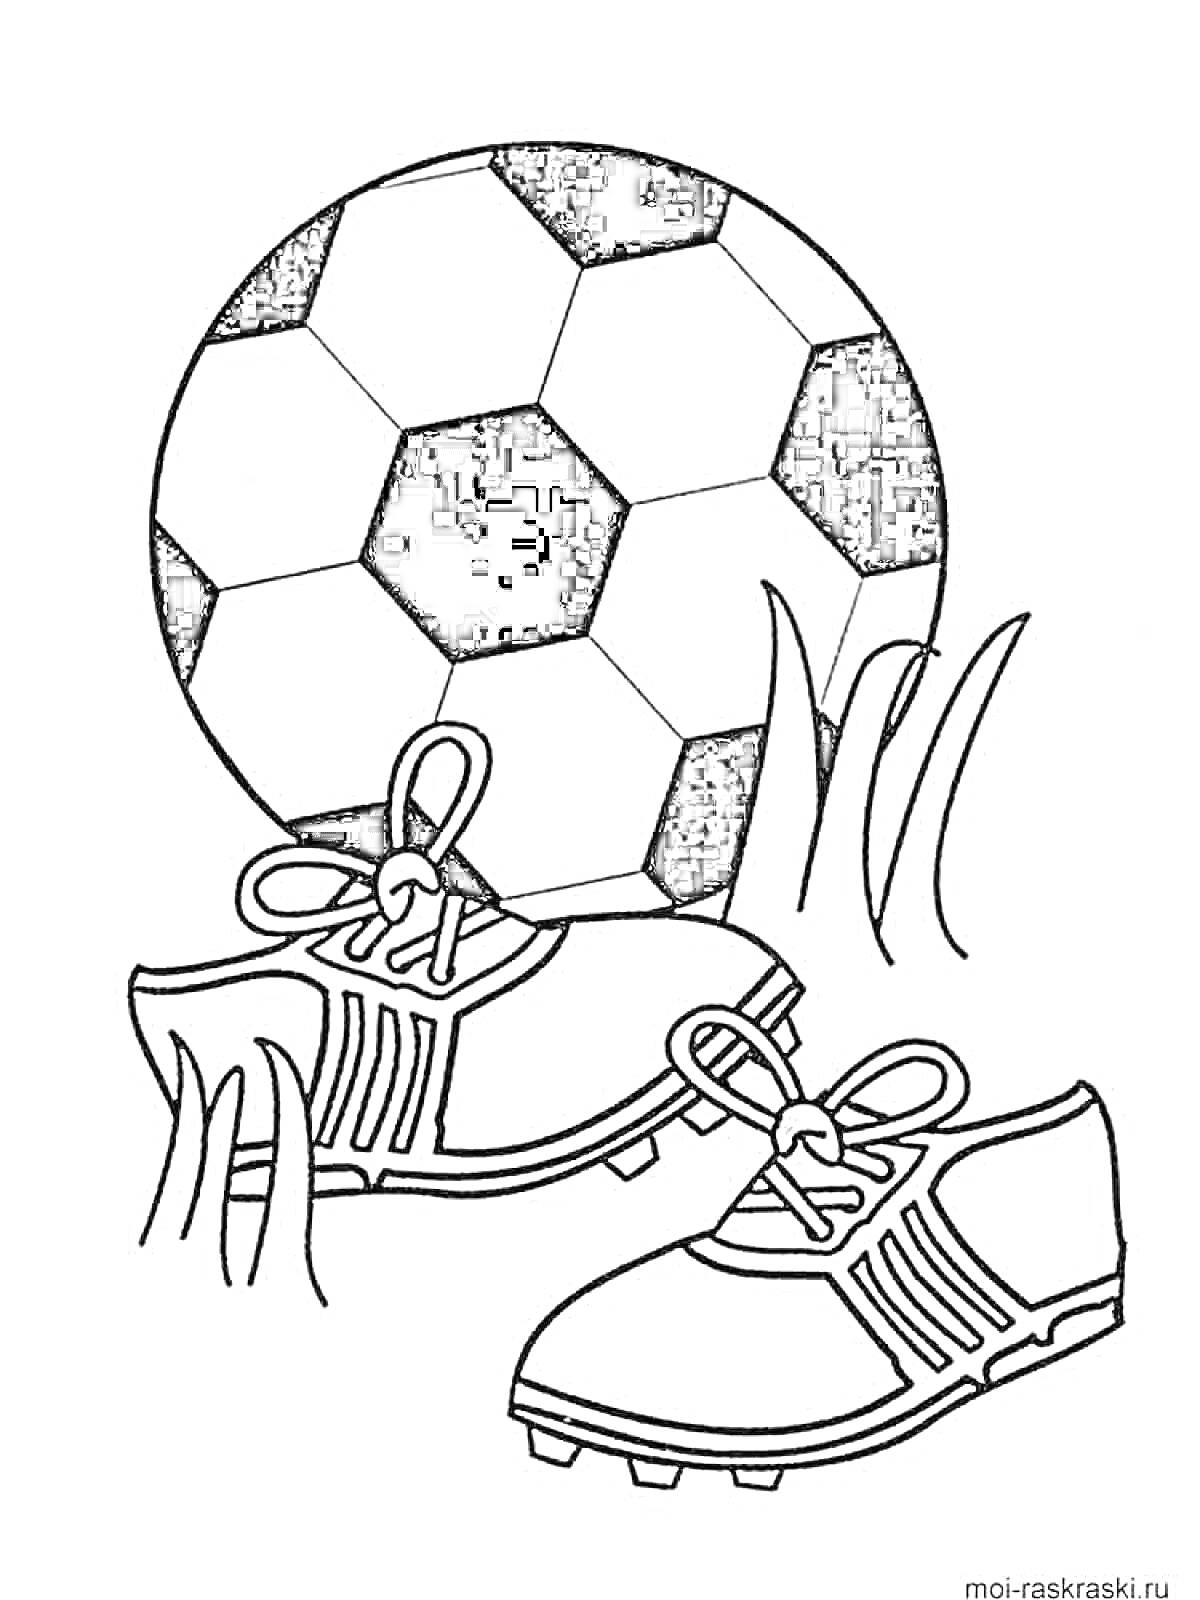 Раскраска Футбольный мяч, пара футбольных бутс и трава